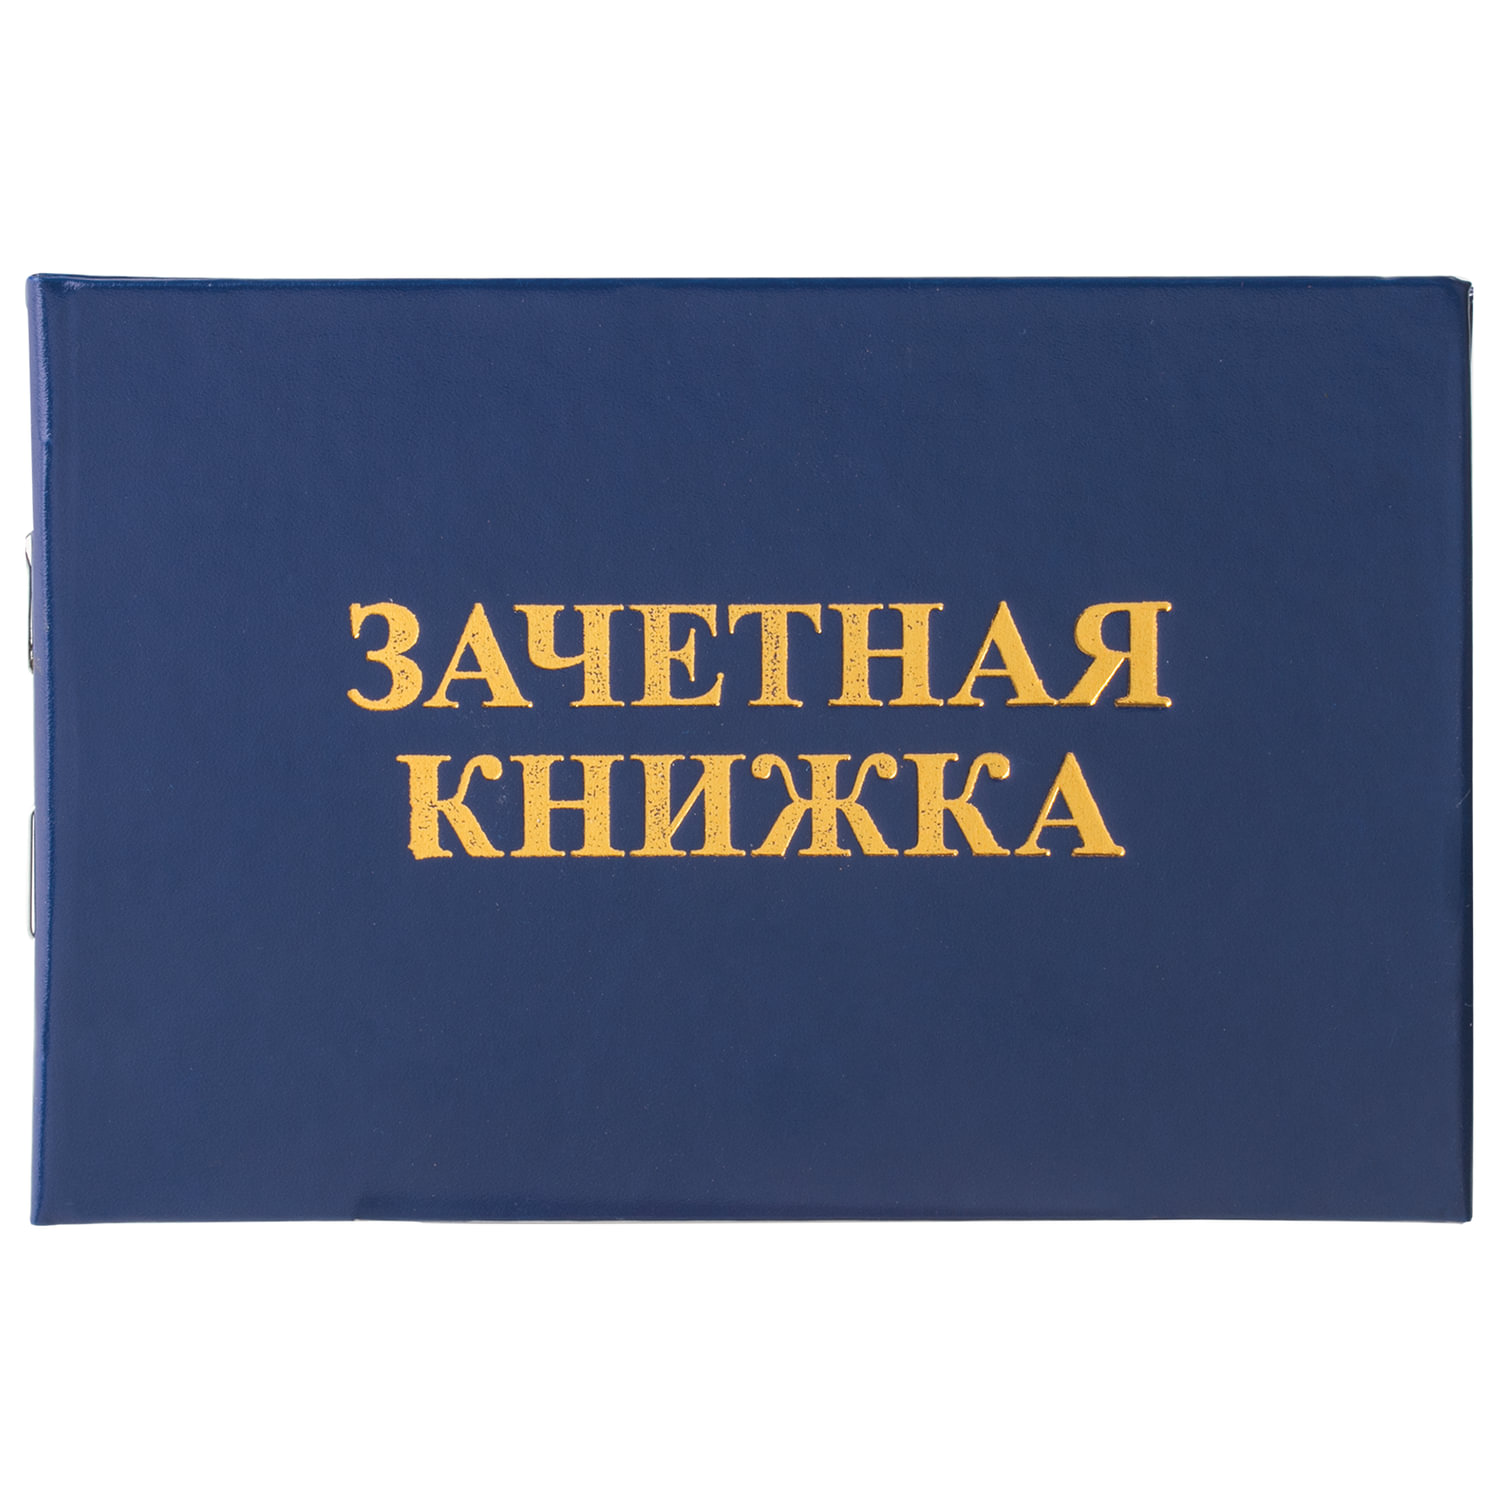 Бланк документа "Зачетная книжка для среднего профессионального образования", 101х138 мм, STAFF, 129